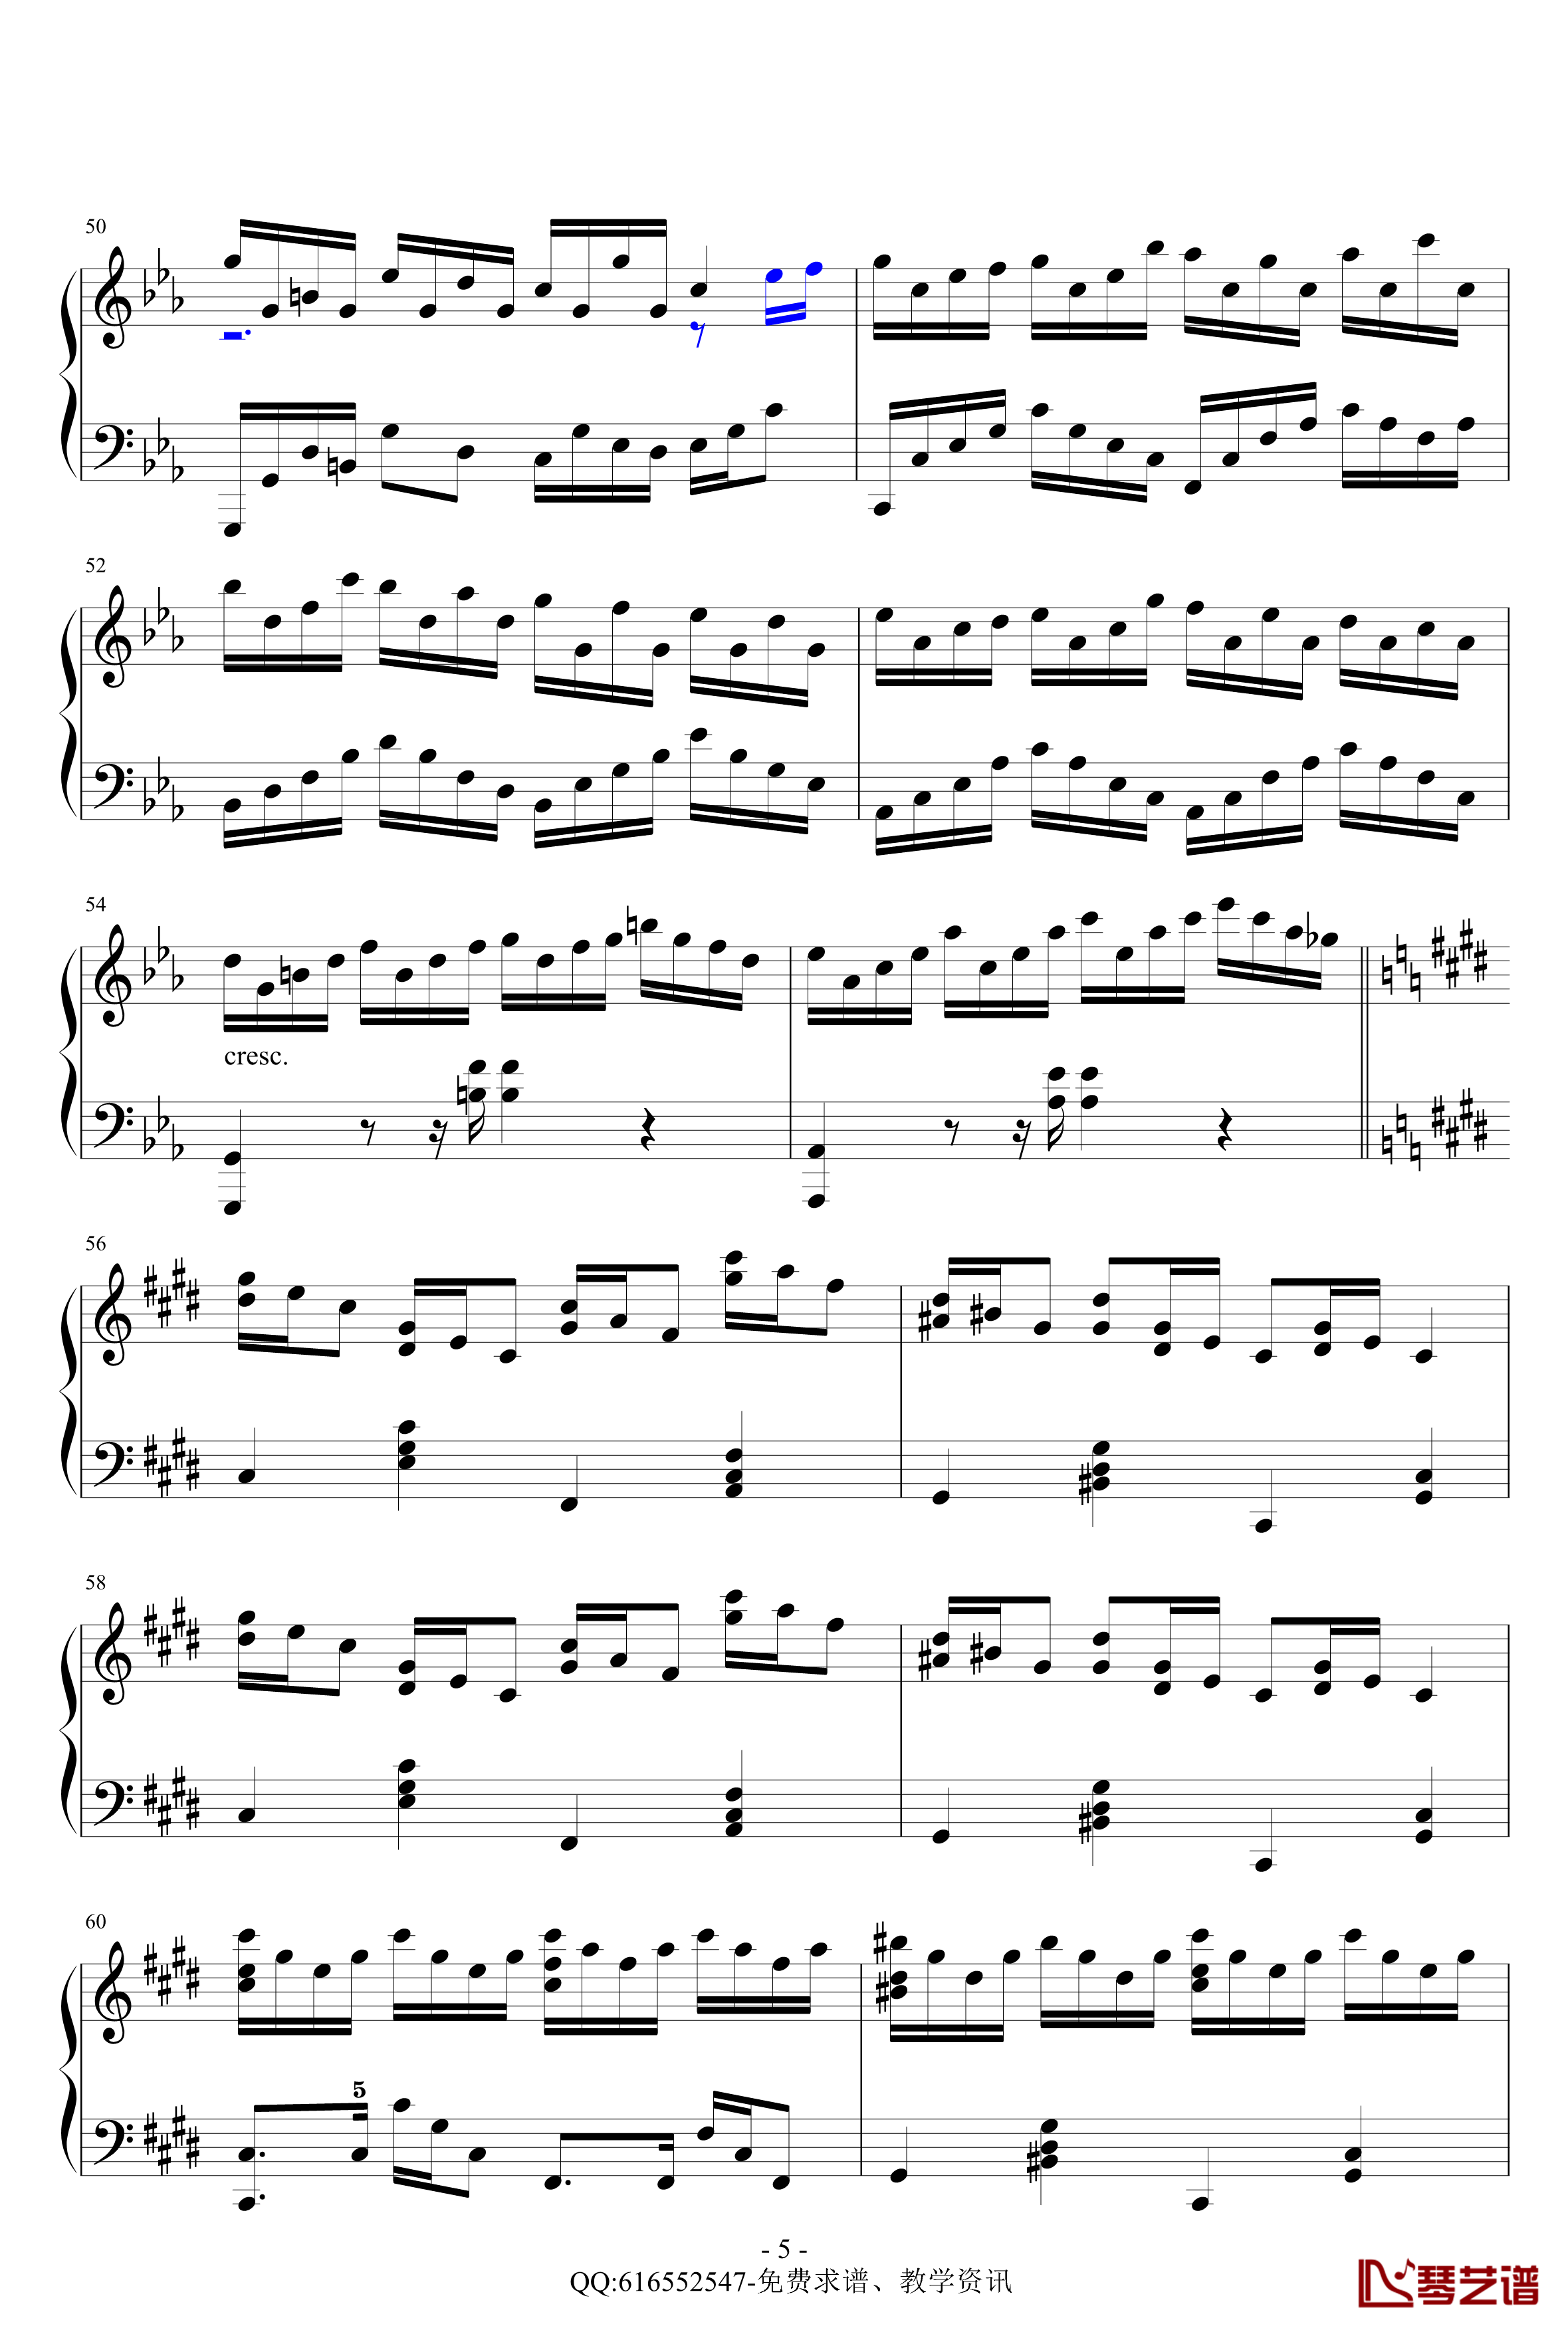 克罗地亚狂想曲钢琴谱-精致版-金龙鱼170427-马克西姆-Maksim·Mrvica5